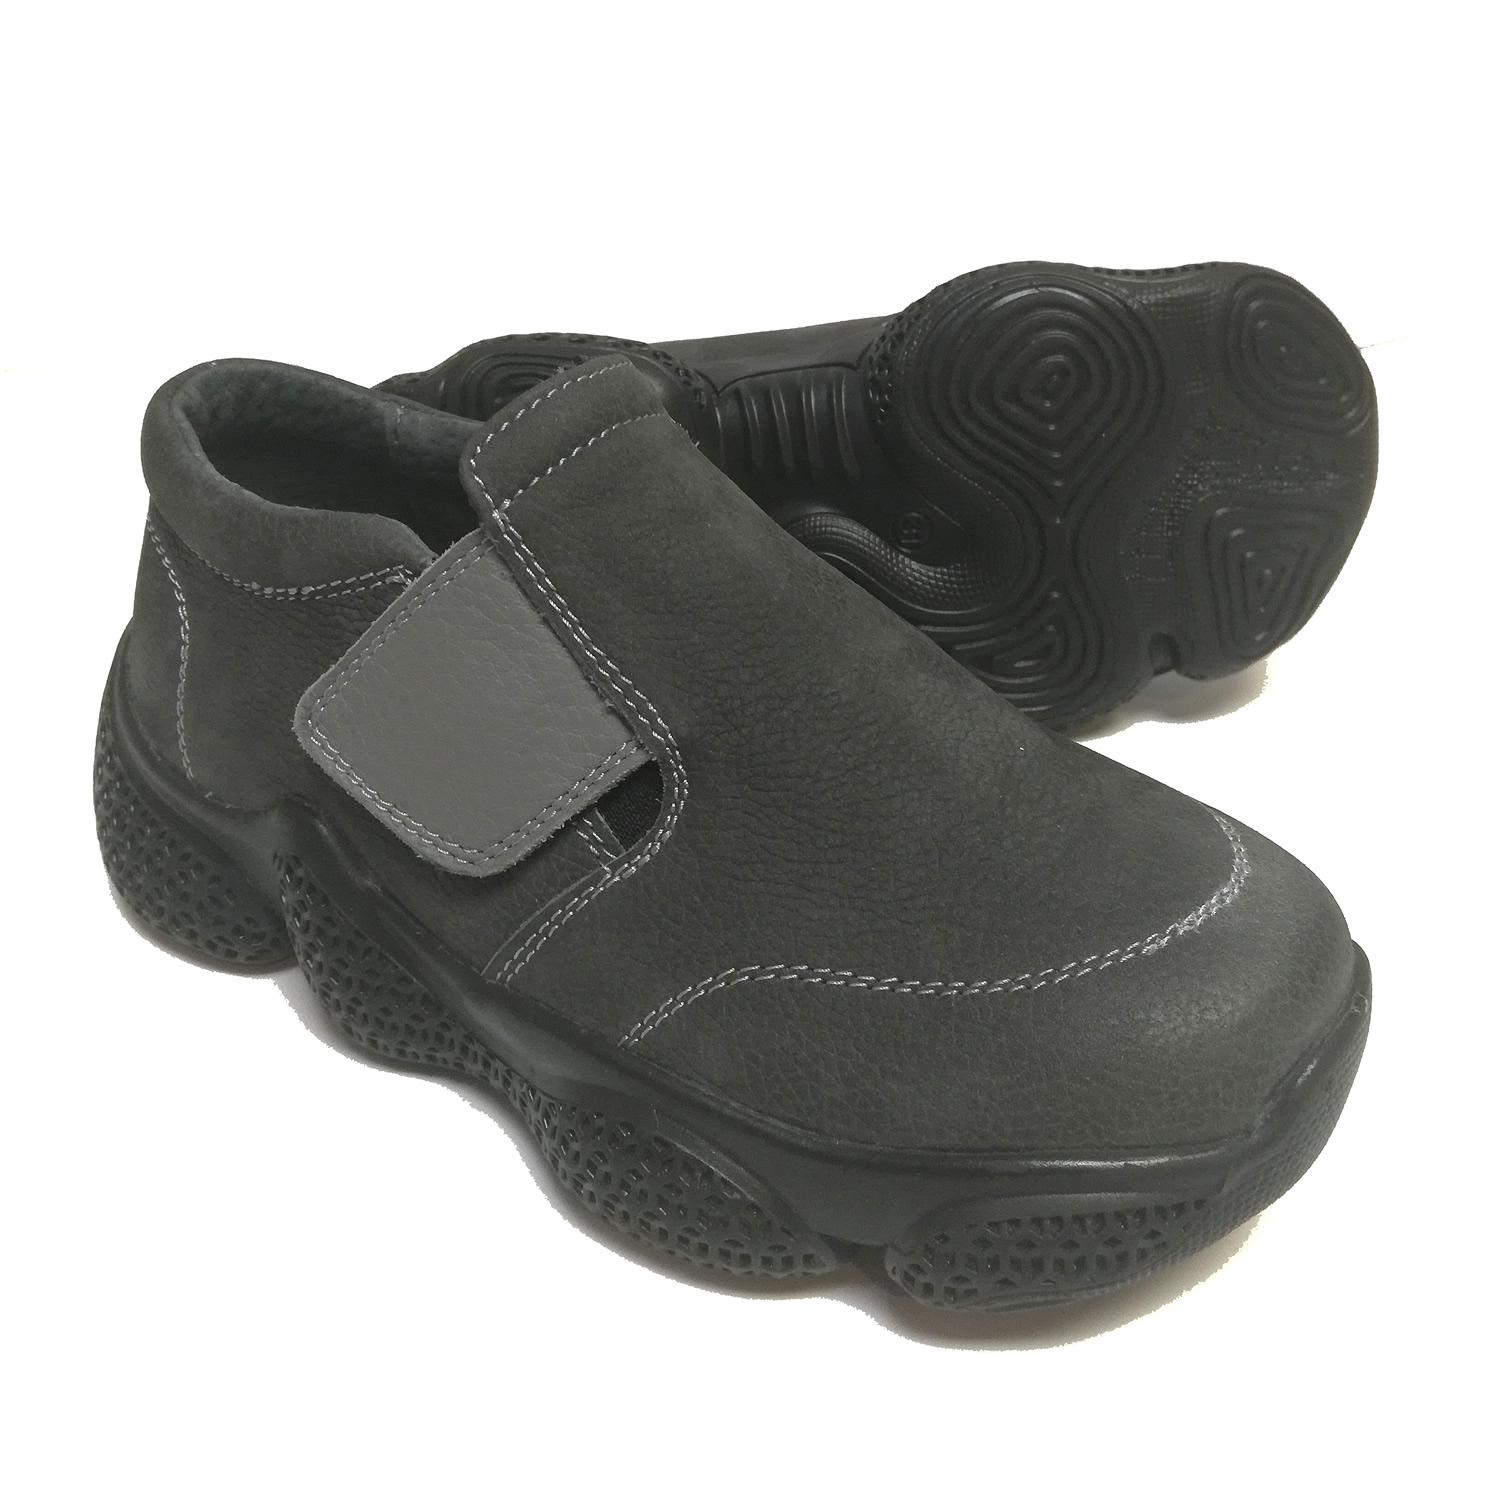 Туфли для мальчика, темно-серые (07213/34), Bistfor